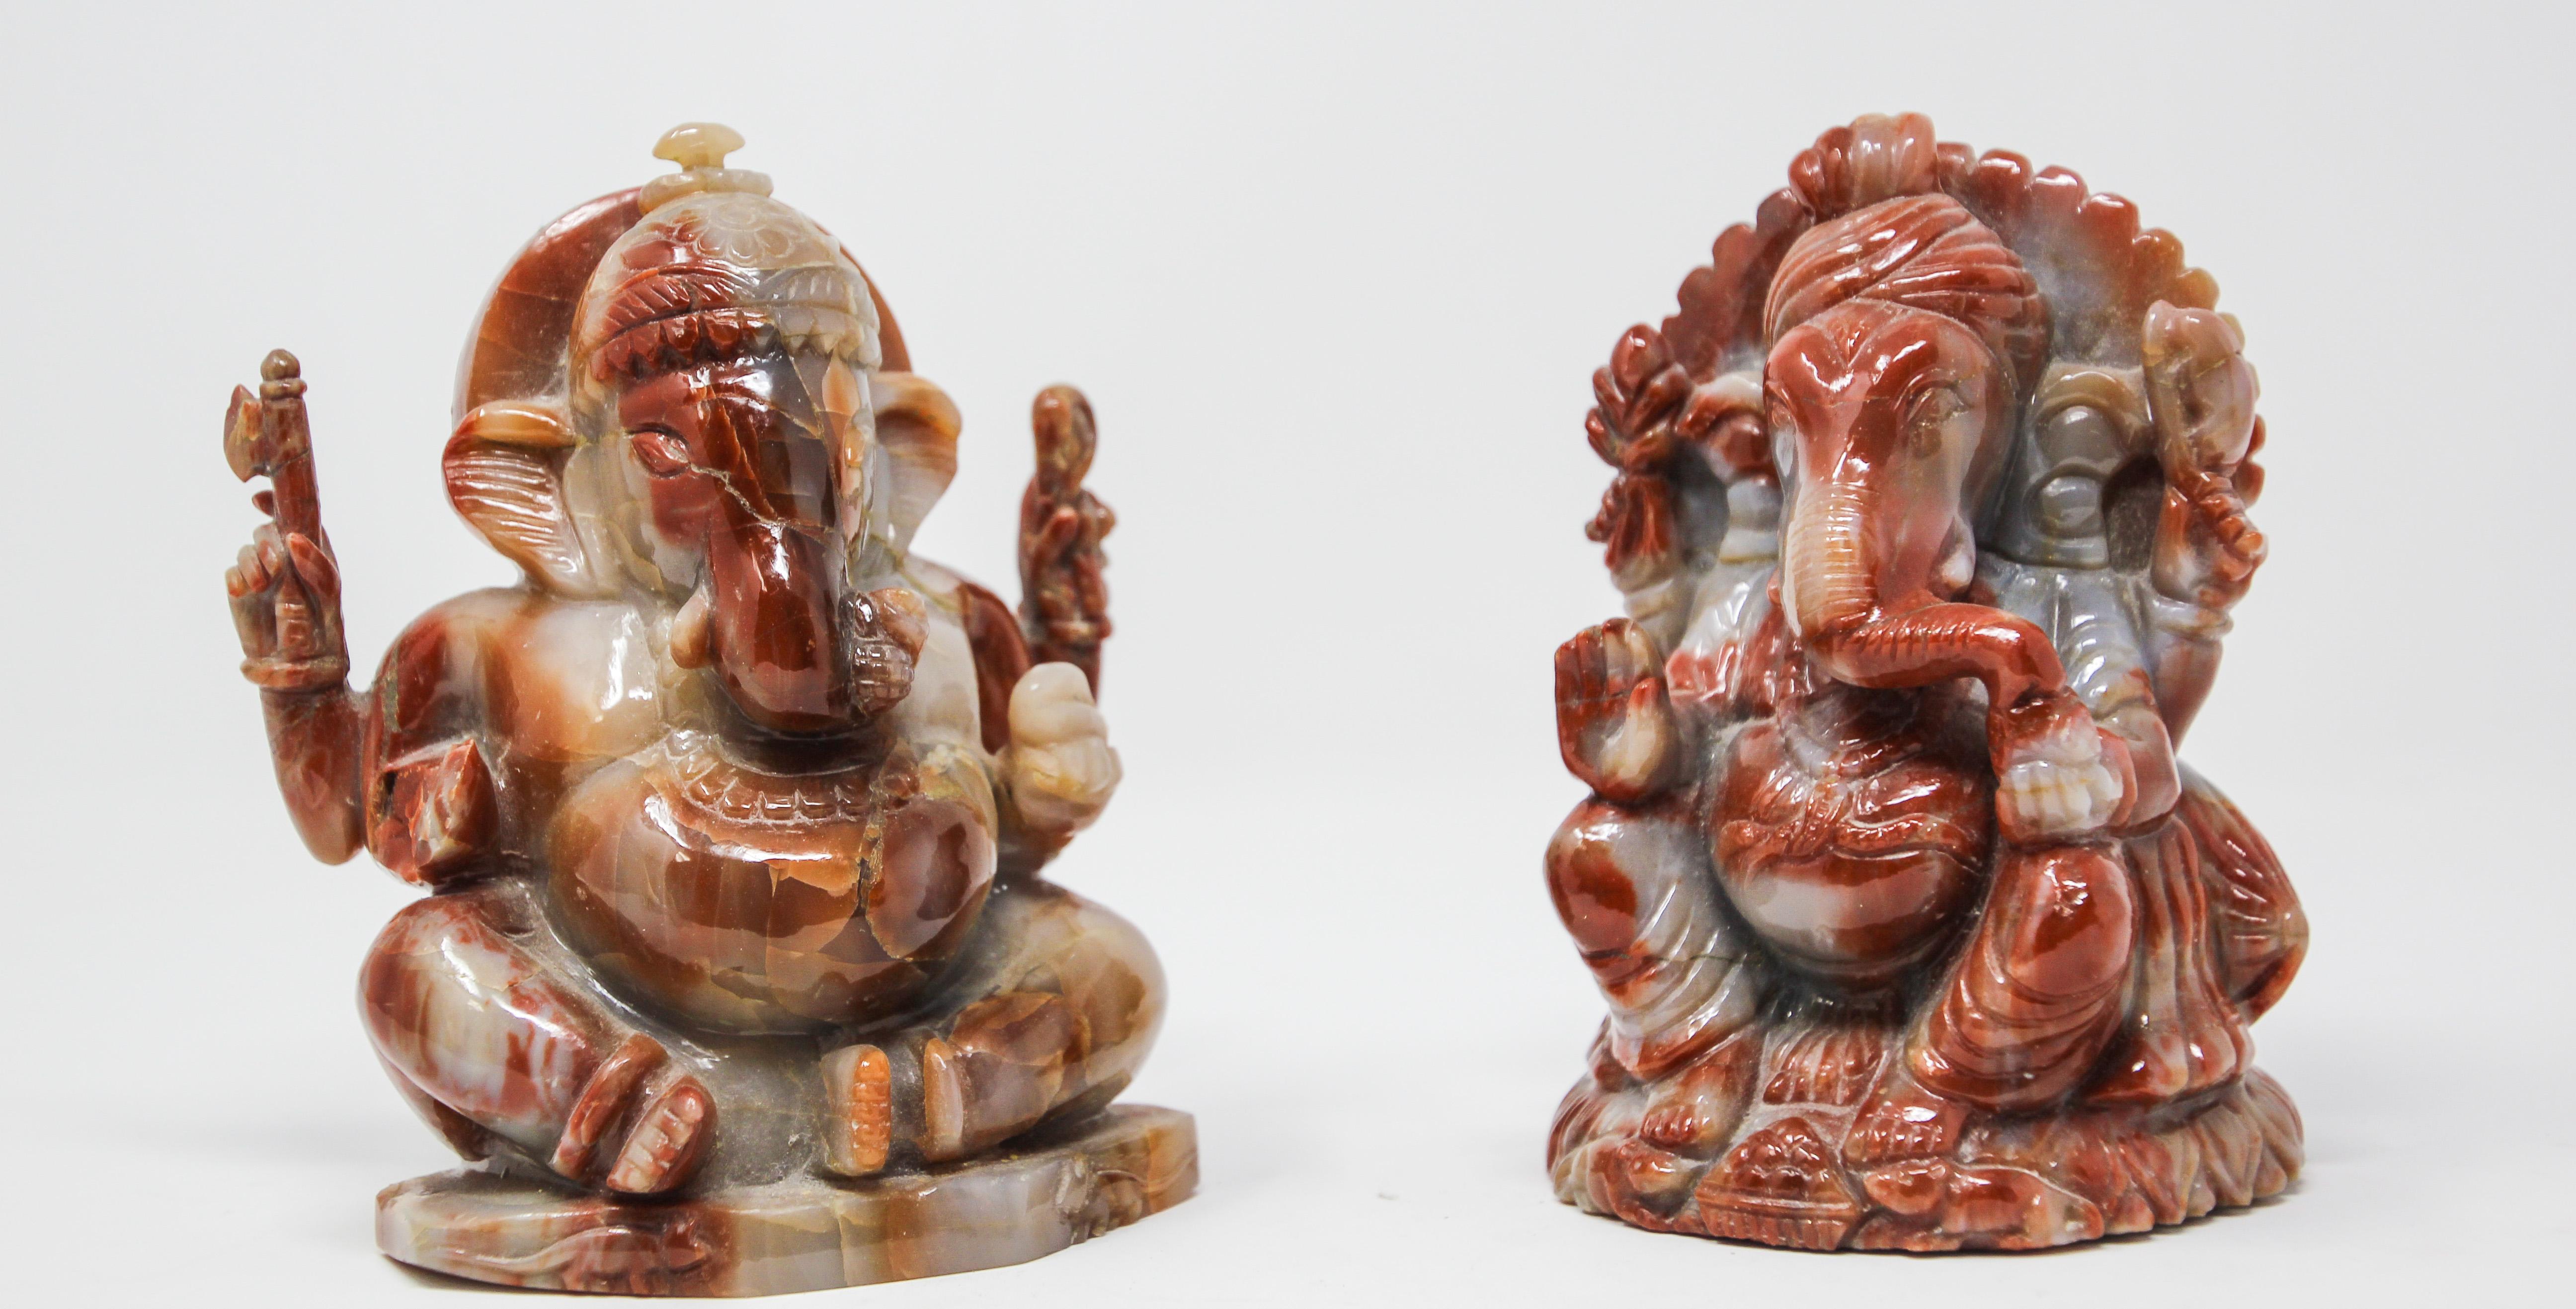 Vintage Stein Hindu Ganesh Sammlerstück Hindu-Gottheit Statue aus Indien.
Ganesh ist ein hinduistisches Steinamulett zum Schutz und wird weithin als der Beseitiger von Hindernissen verehrt.
Ganesh: 5